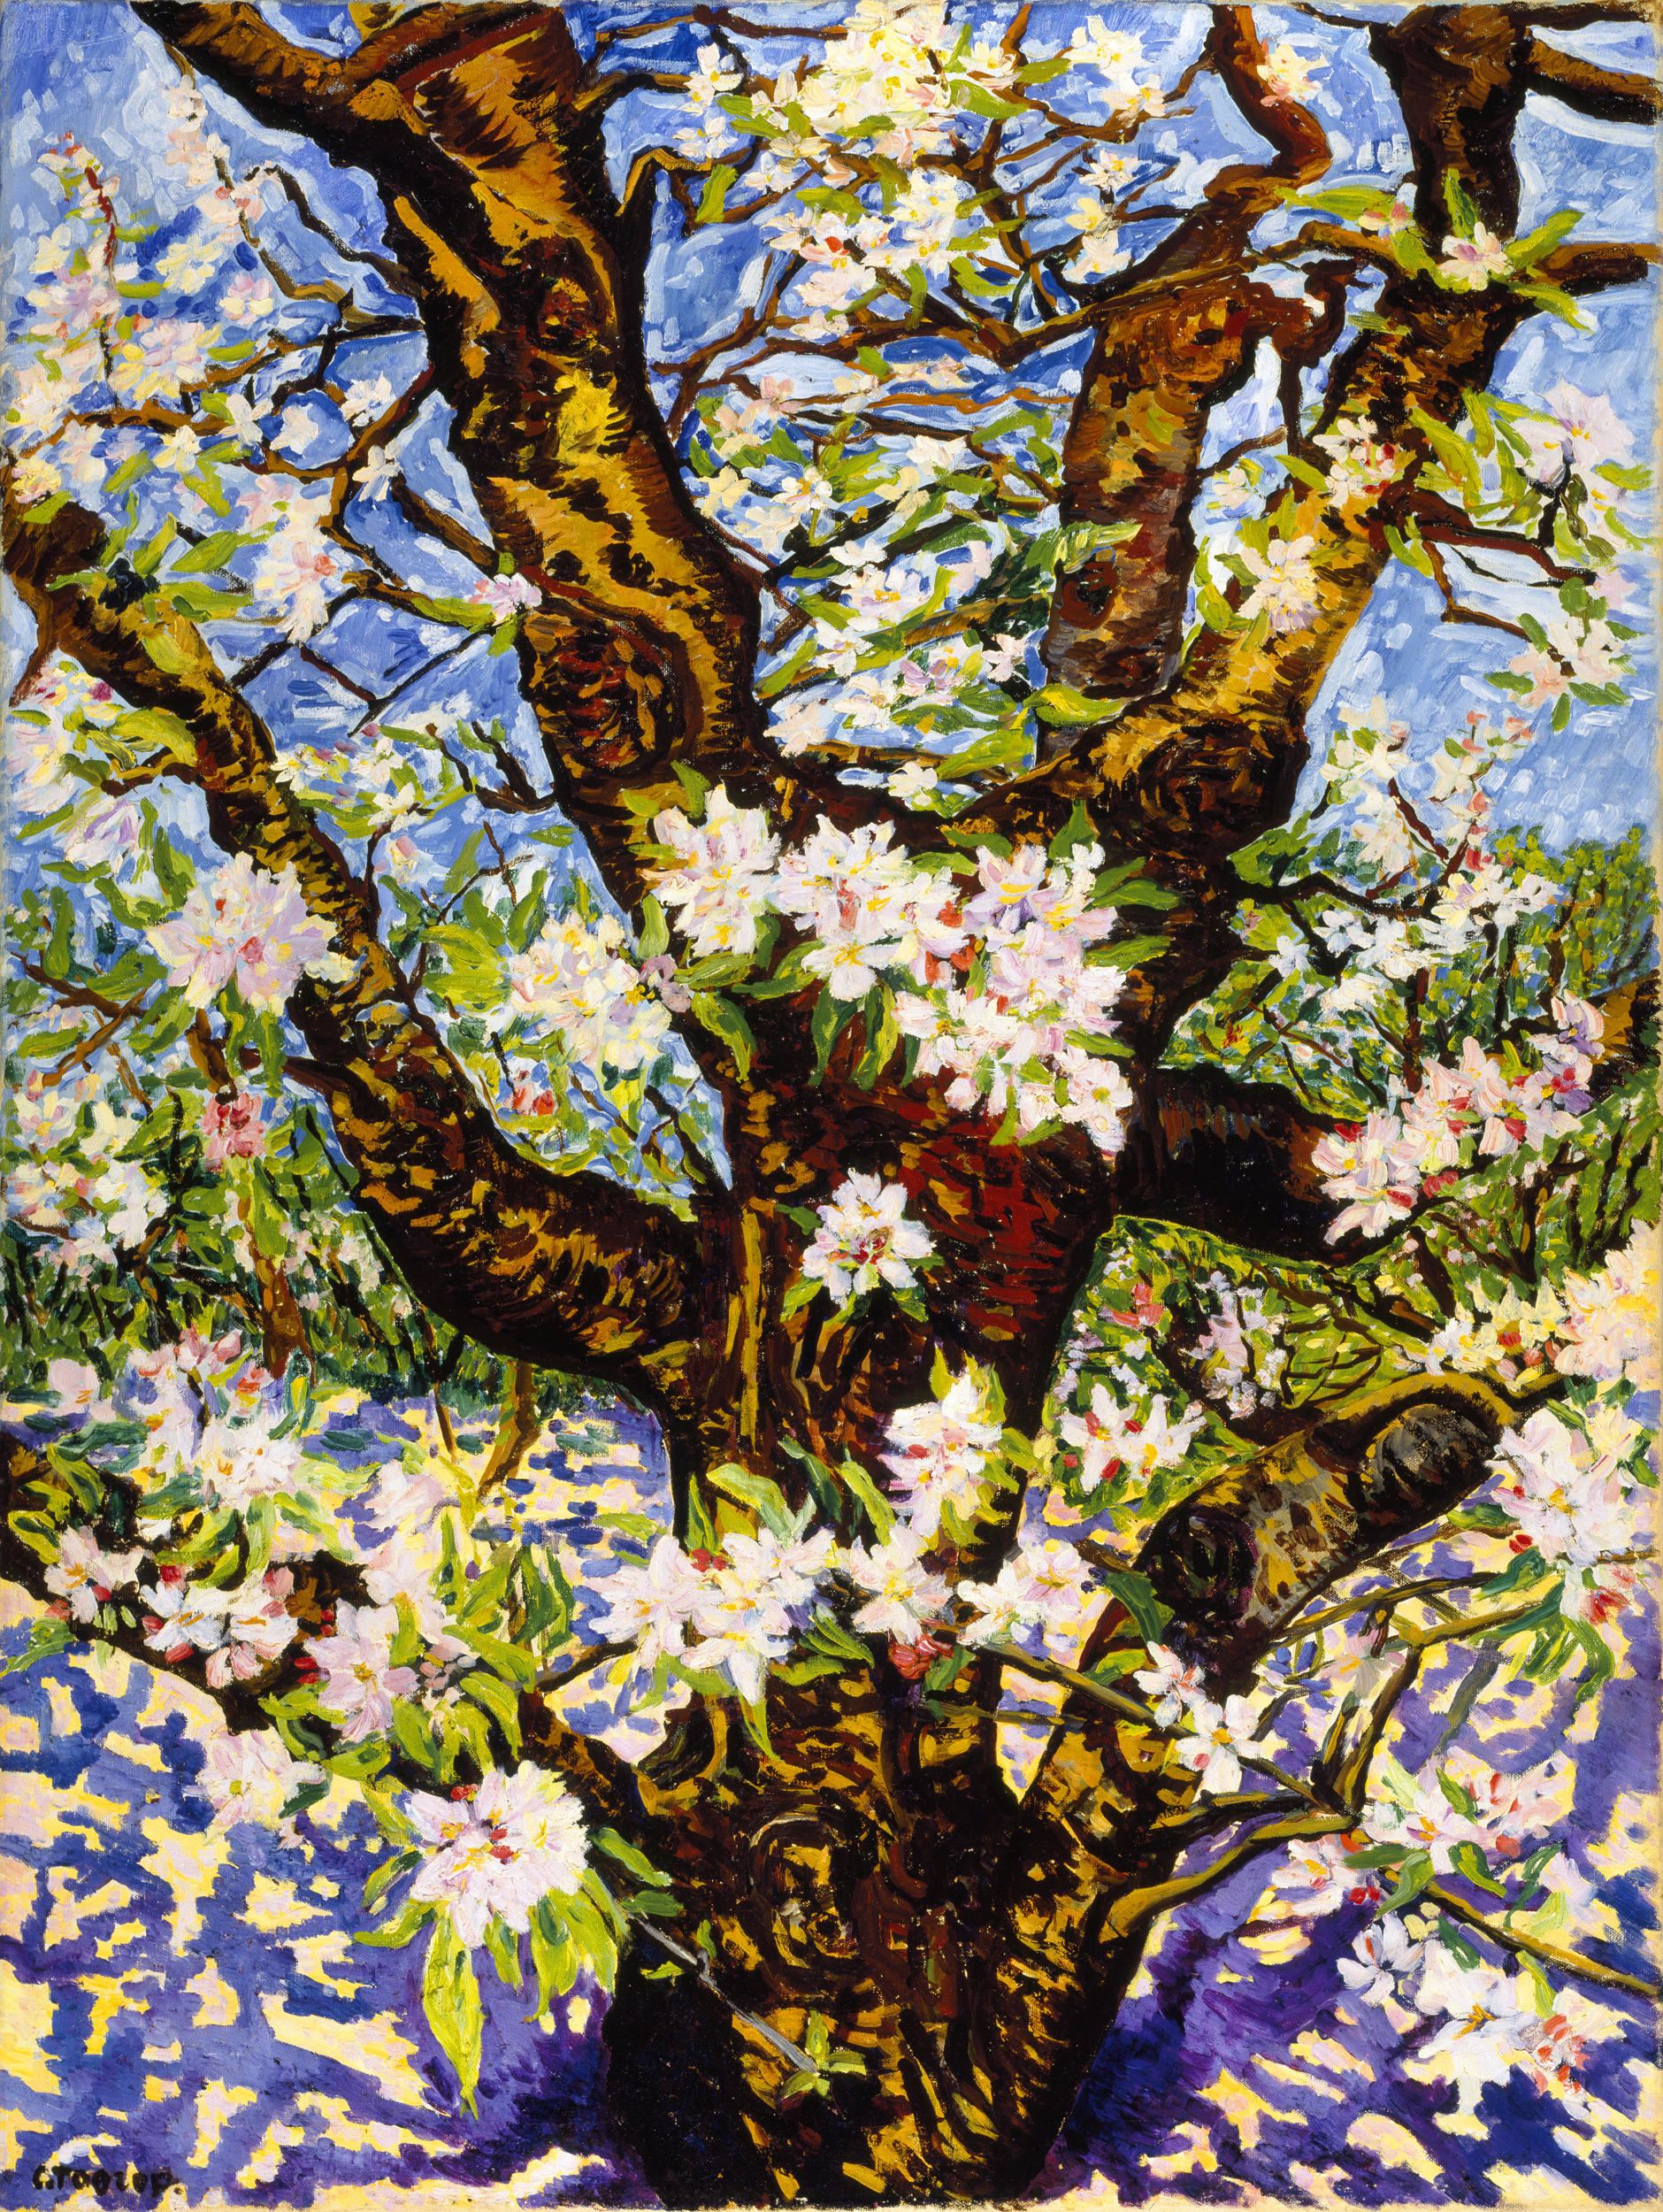 花朵盛放的老苹果树 by 查理 托洛普 - 1949年 - 120 x 90厘米 库勒-穆勒博物馆